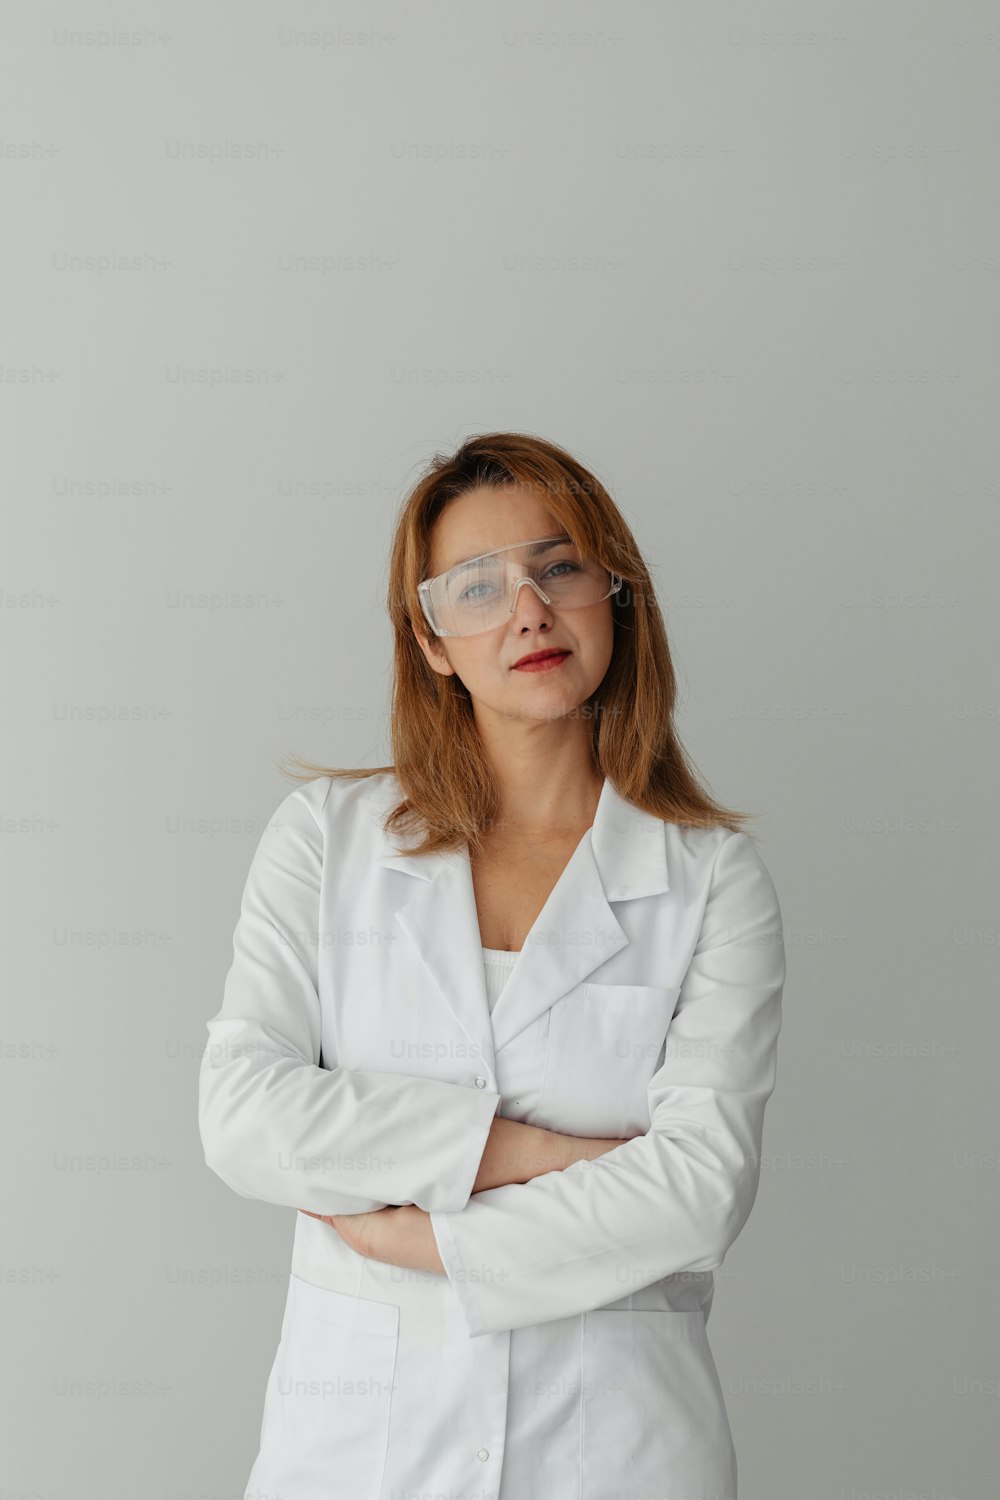 Eine Frau in weißem Laborkittel und Brille